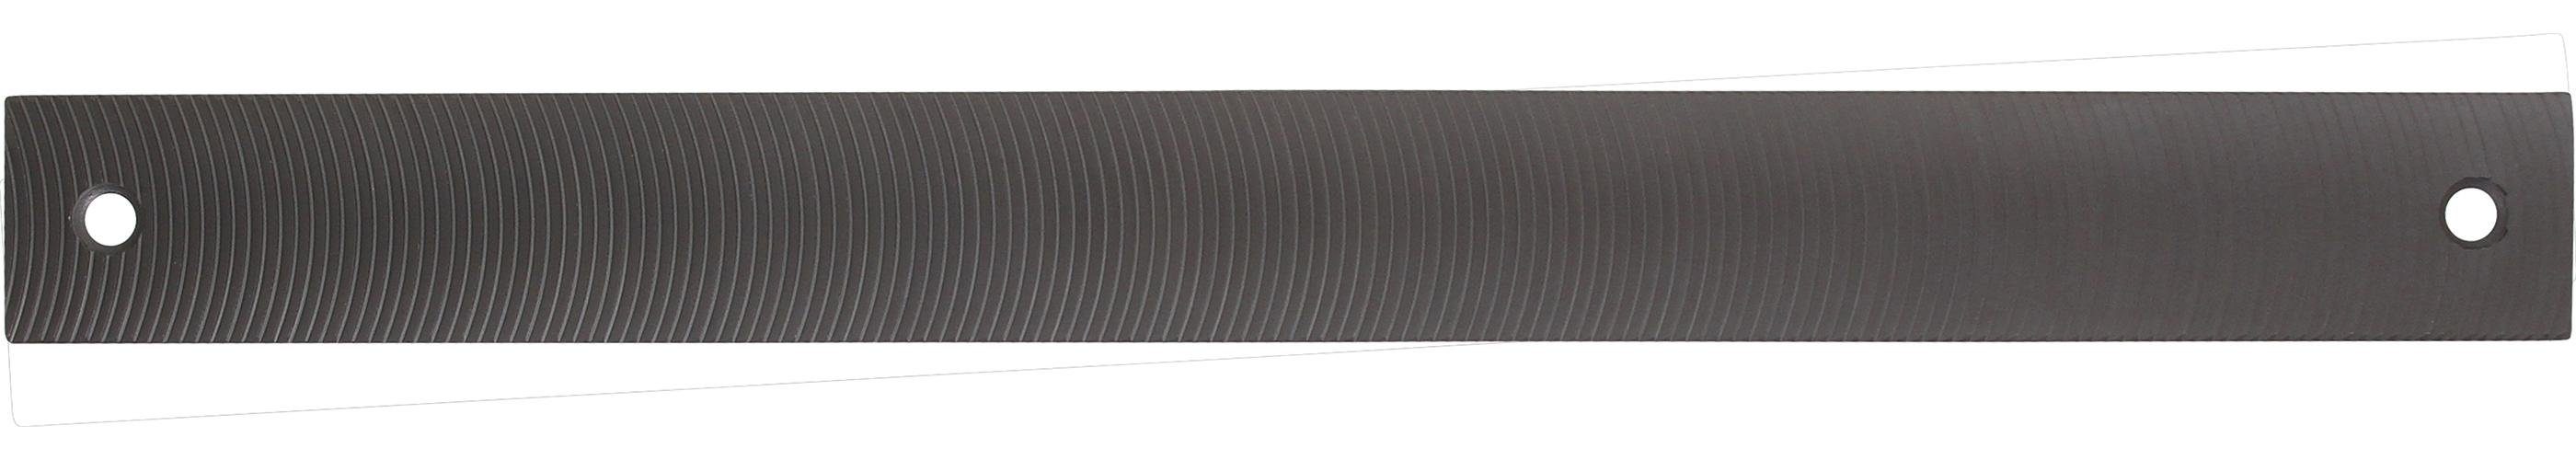 BGS technic Demontagewerkzeug Karosseriefeilenblatt, fein, radial gefräst, 350 x 35 x 4 mm